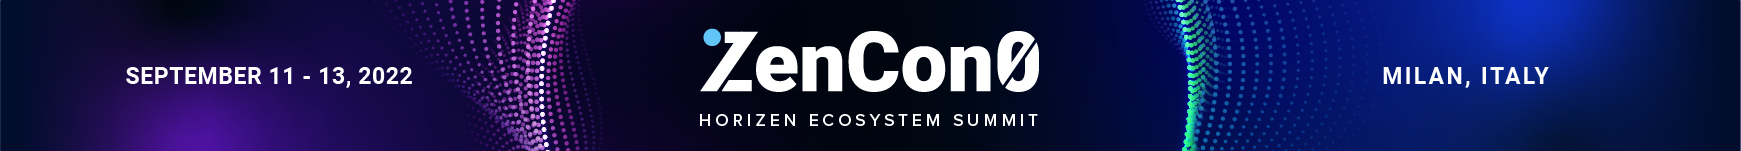 ZenCon0 event